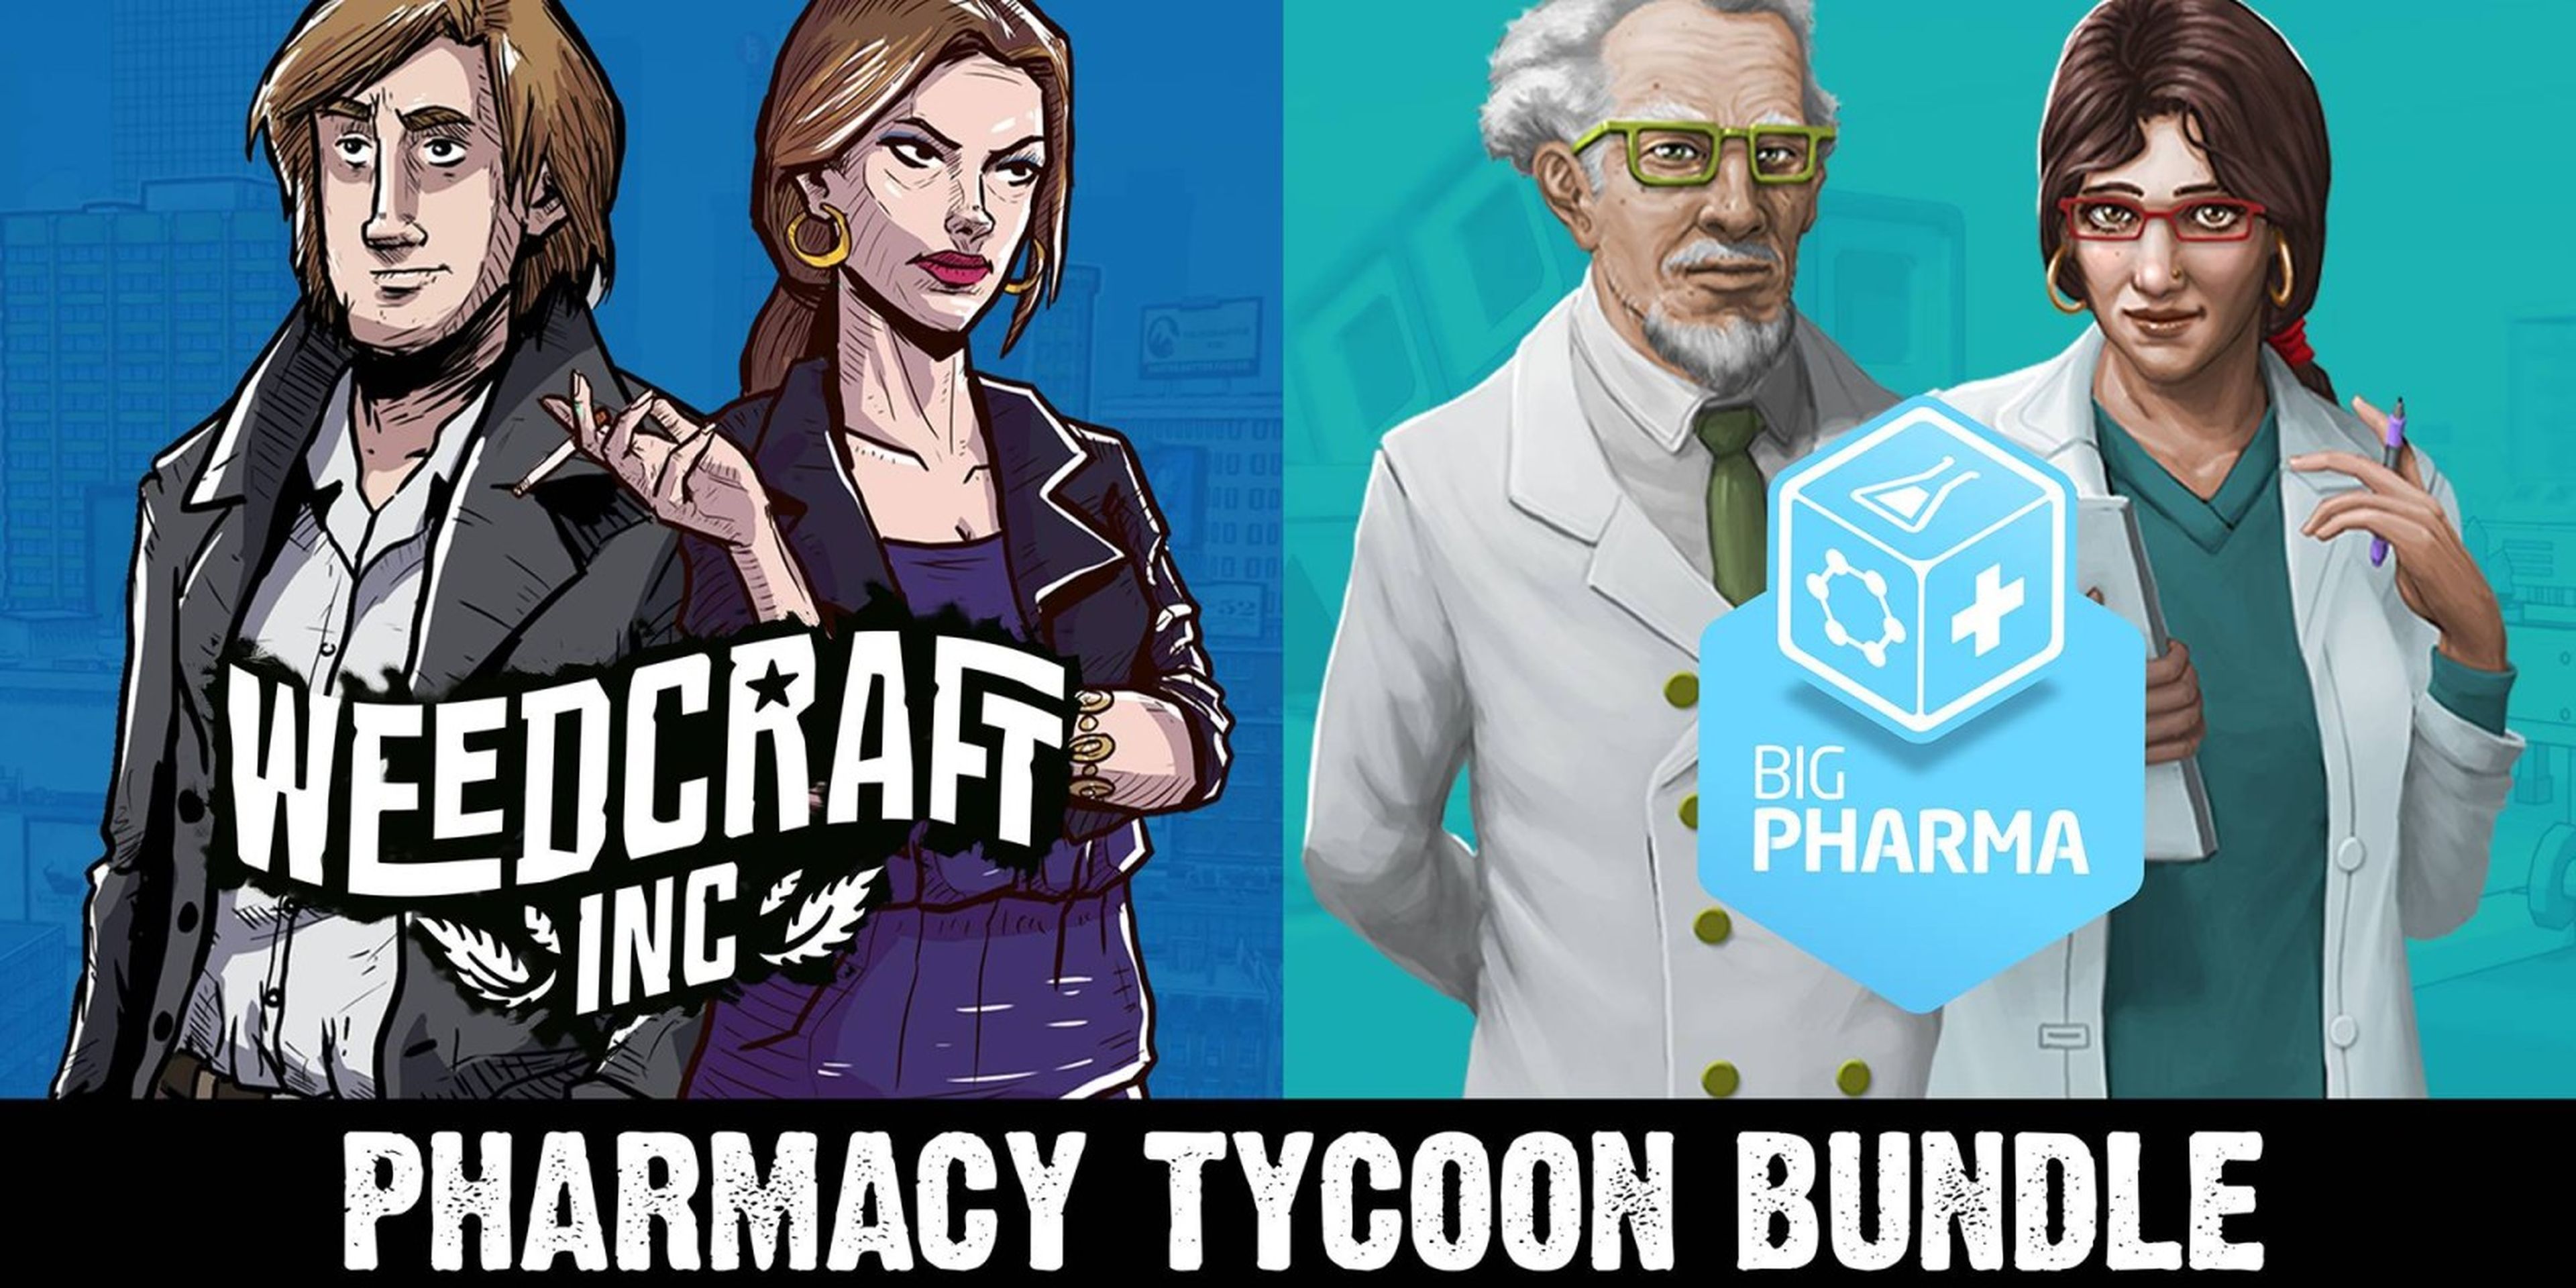 Pharmacy Tycoon Bundle: Woodcraft Inc & Big Pharma